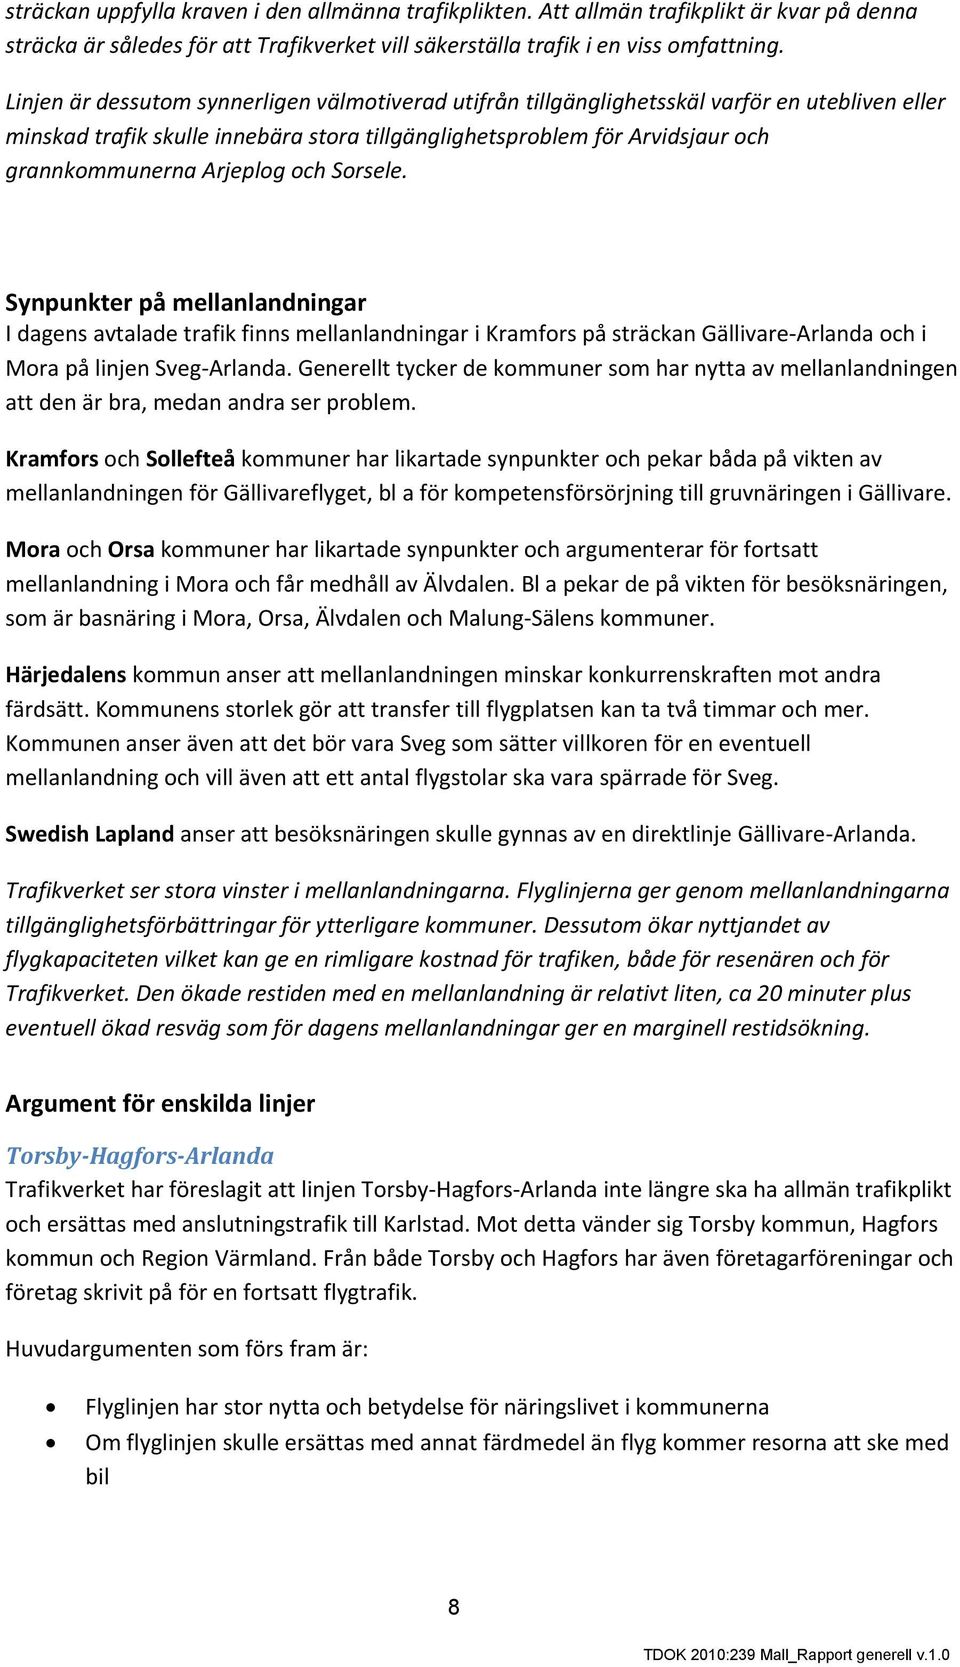 Arjeplog och Sorsele. Synpunkter på mellanlandningar I dagens avtalade trafik finns mellanlandningar i Kramfors på sträckan Gällivare-Arlanda och i Mora på linjen Sveg-Arlanda.